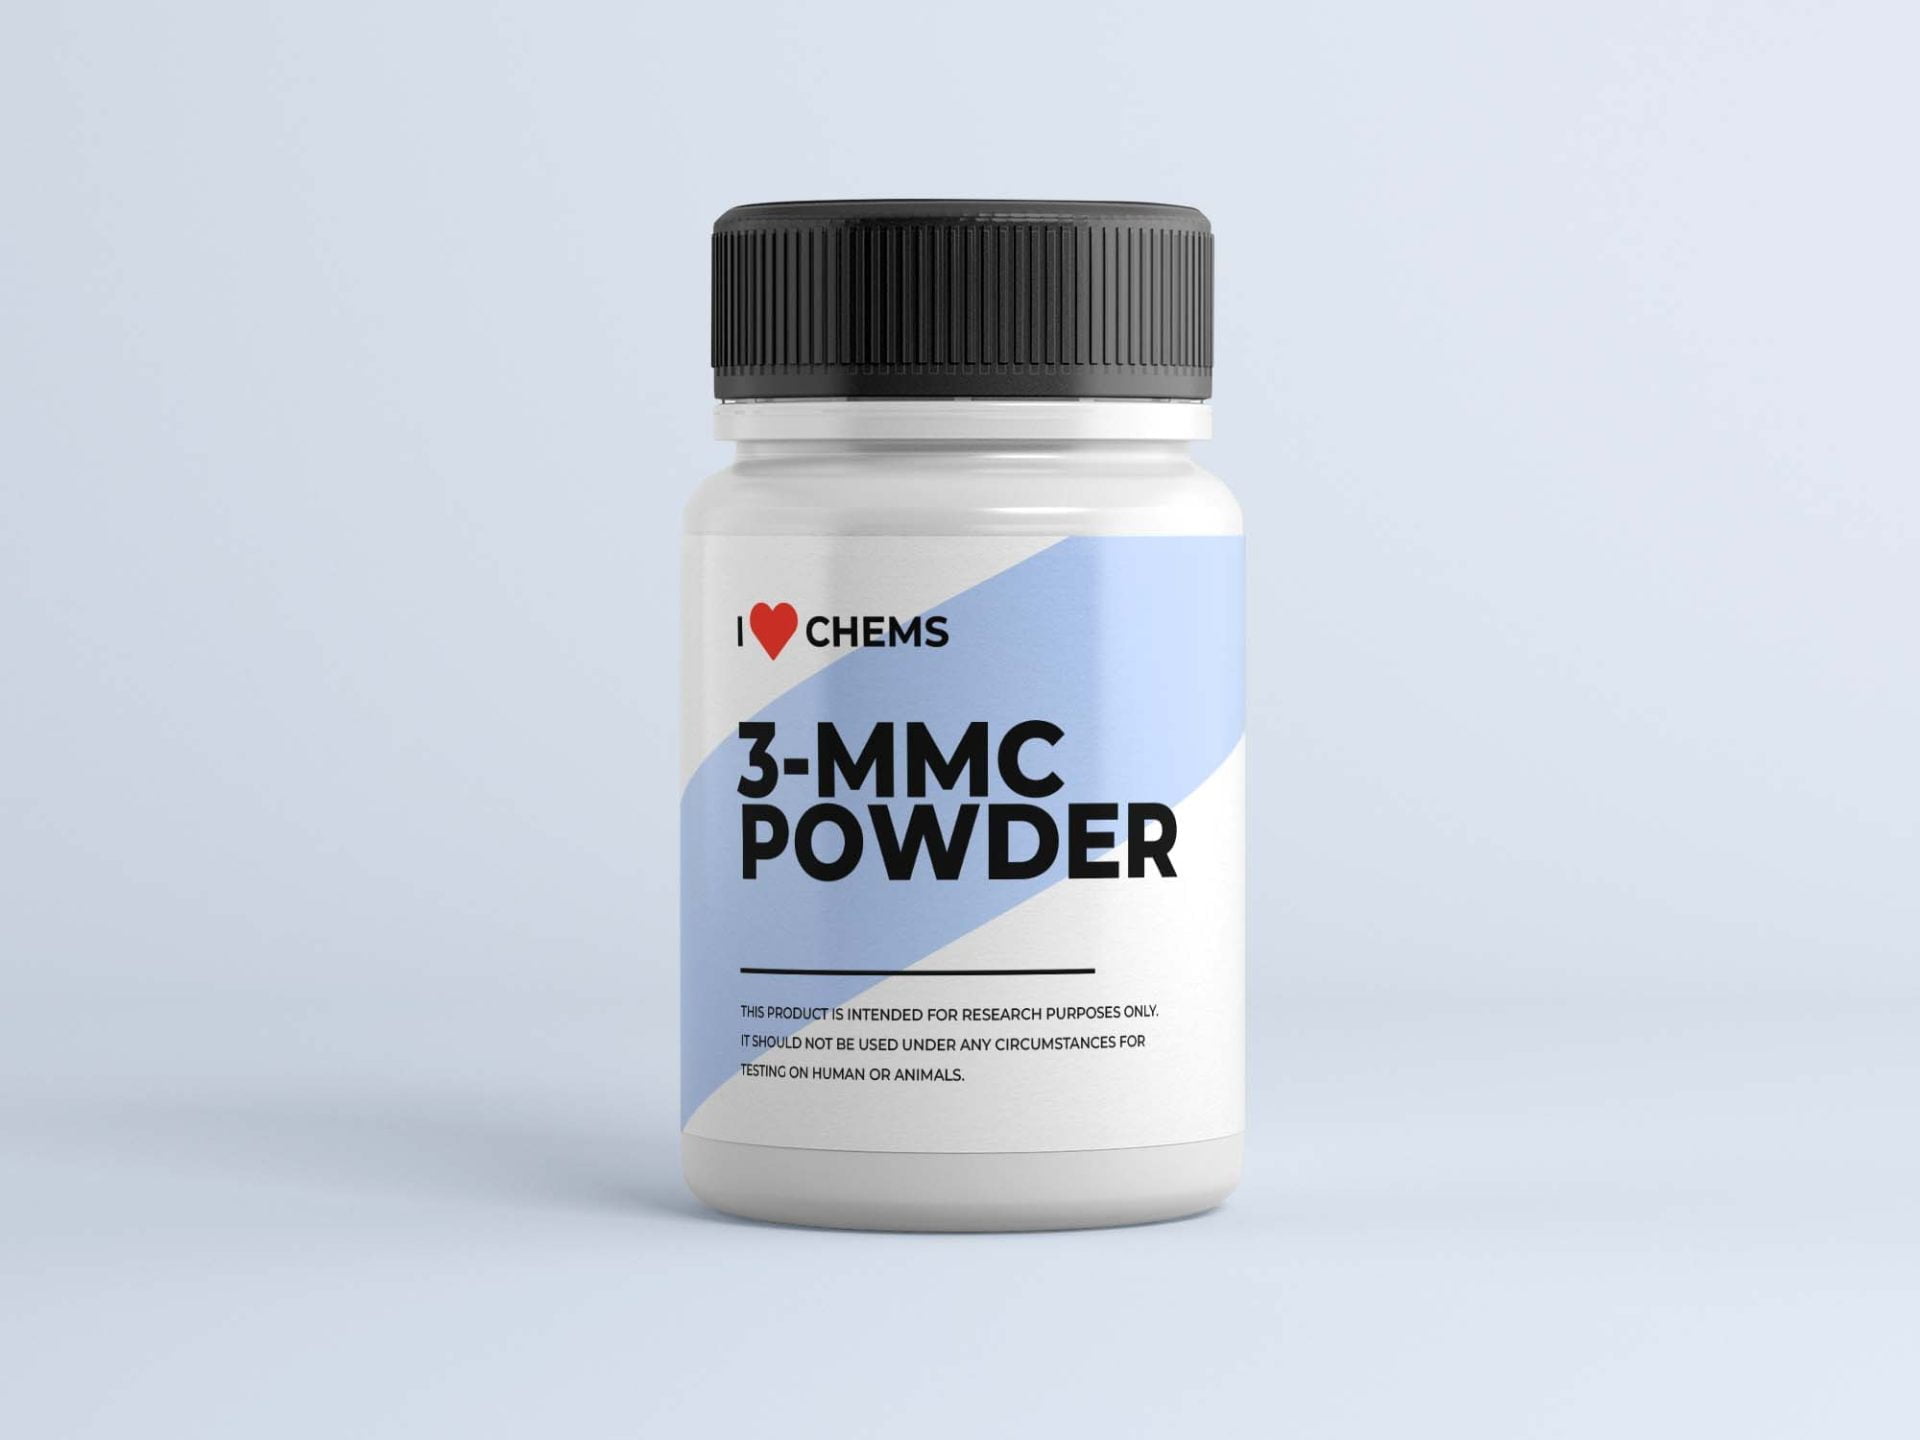 Compre 3 MMC Powder na I Love Chems. 3 Loja MMC na UE. Fornecedor confiável de RC